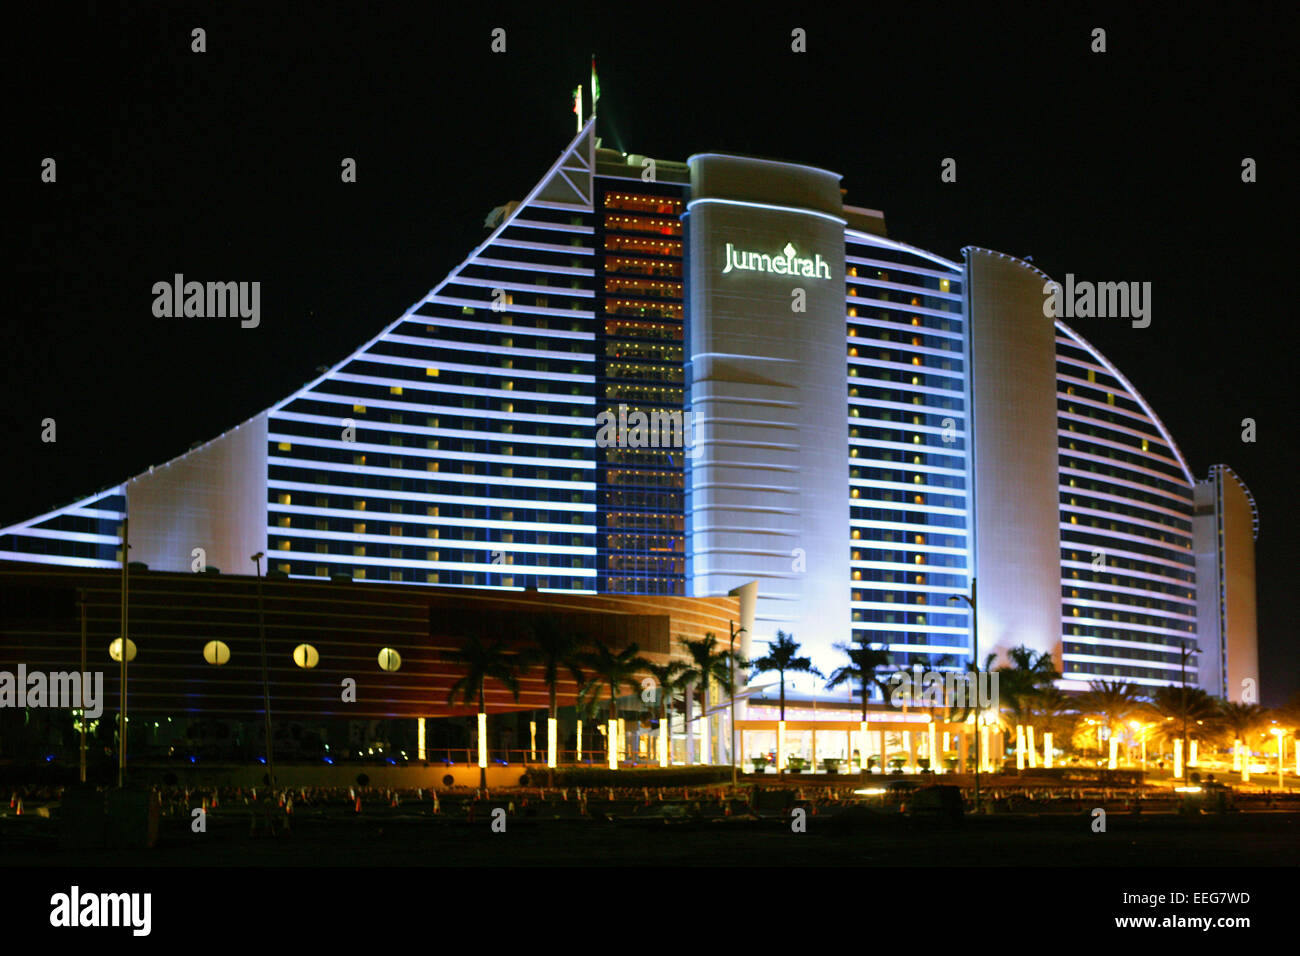 Vereinigte Arabische Emirate Dubai Jumeirah Beach Hotel Luxushotel Architektur Abend Nacht Modern Gebaeude Reisen Tourismus Sehe Stock Photo